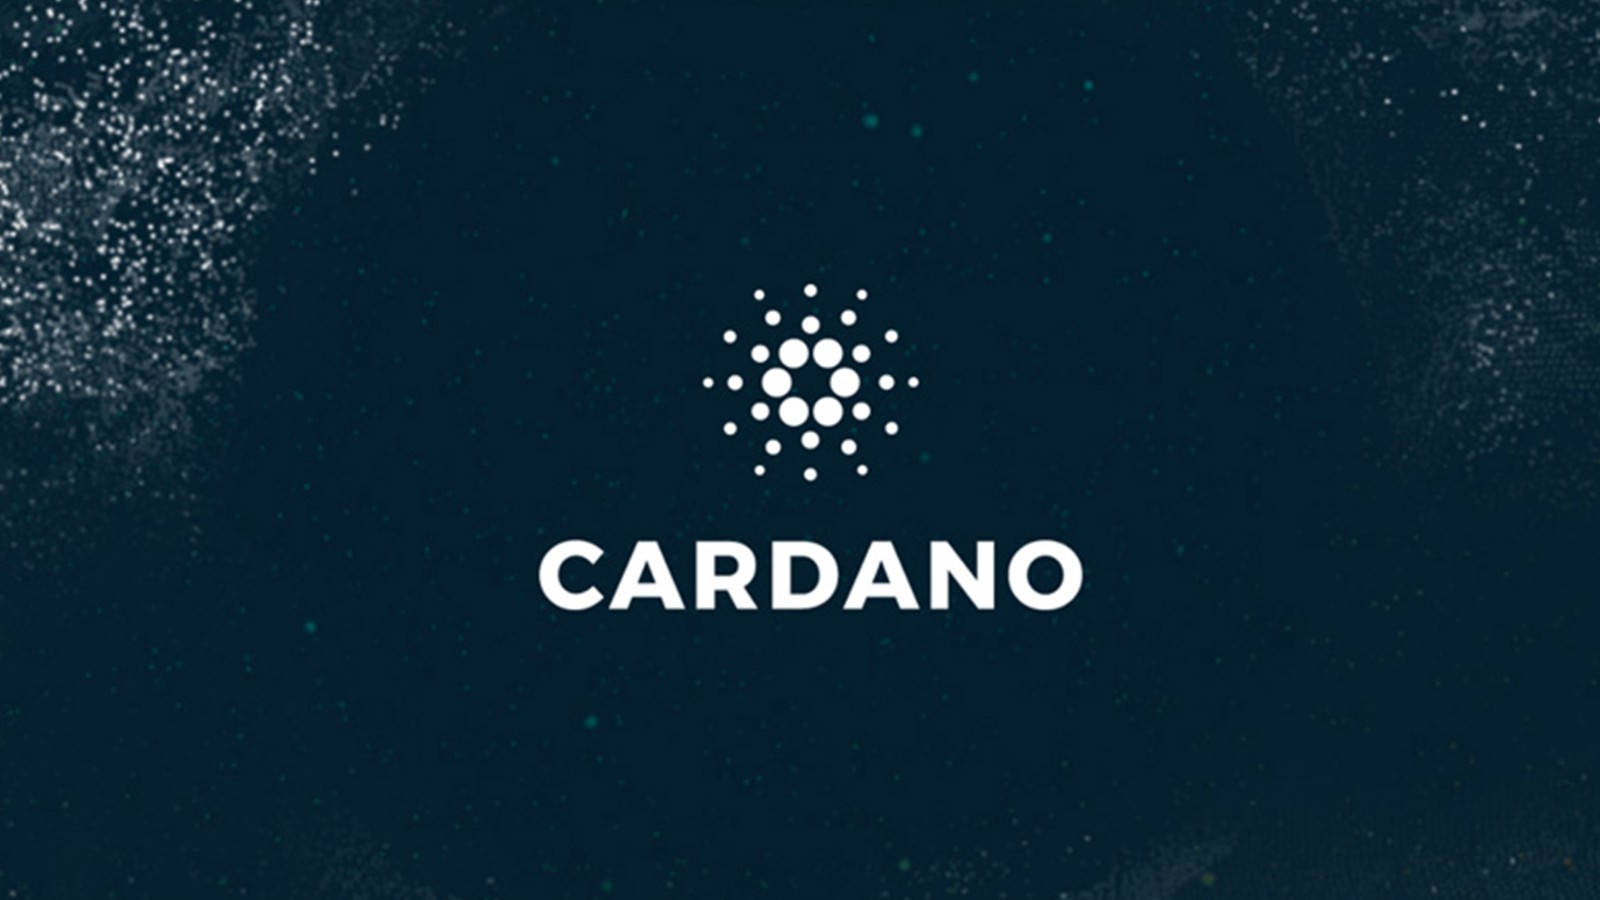 Investasi Cardano: Risiko yang Perlu Dipertimbangkan